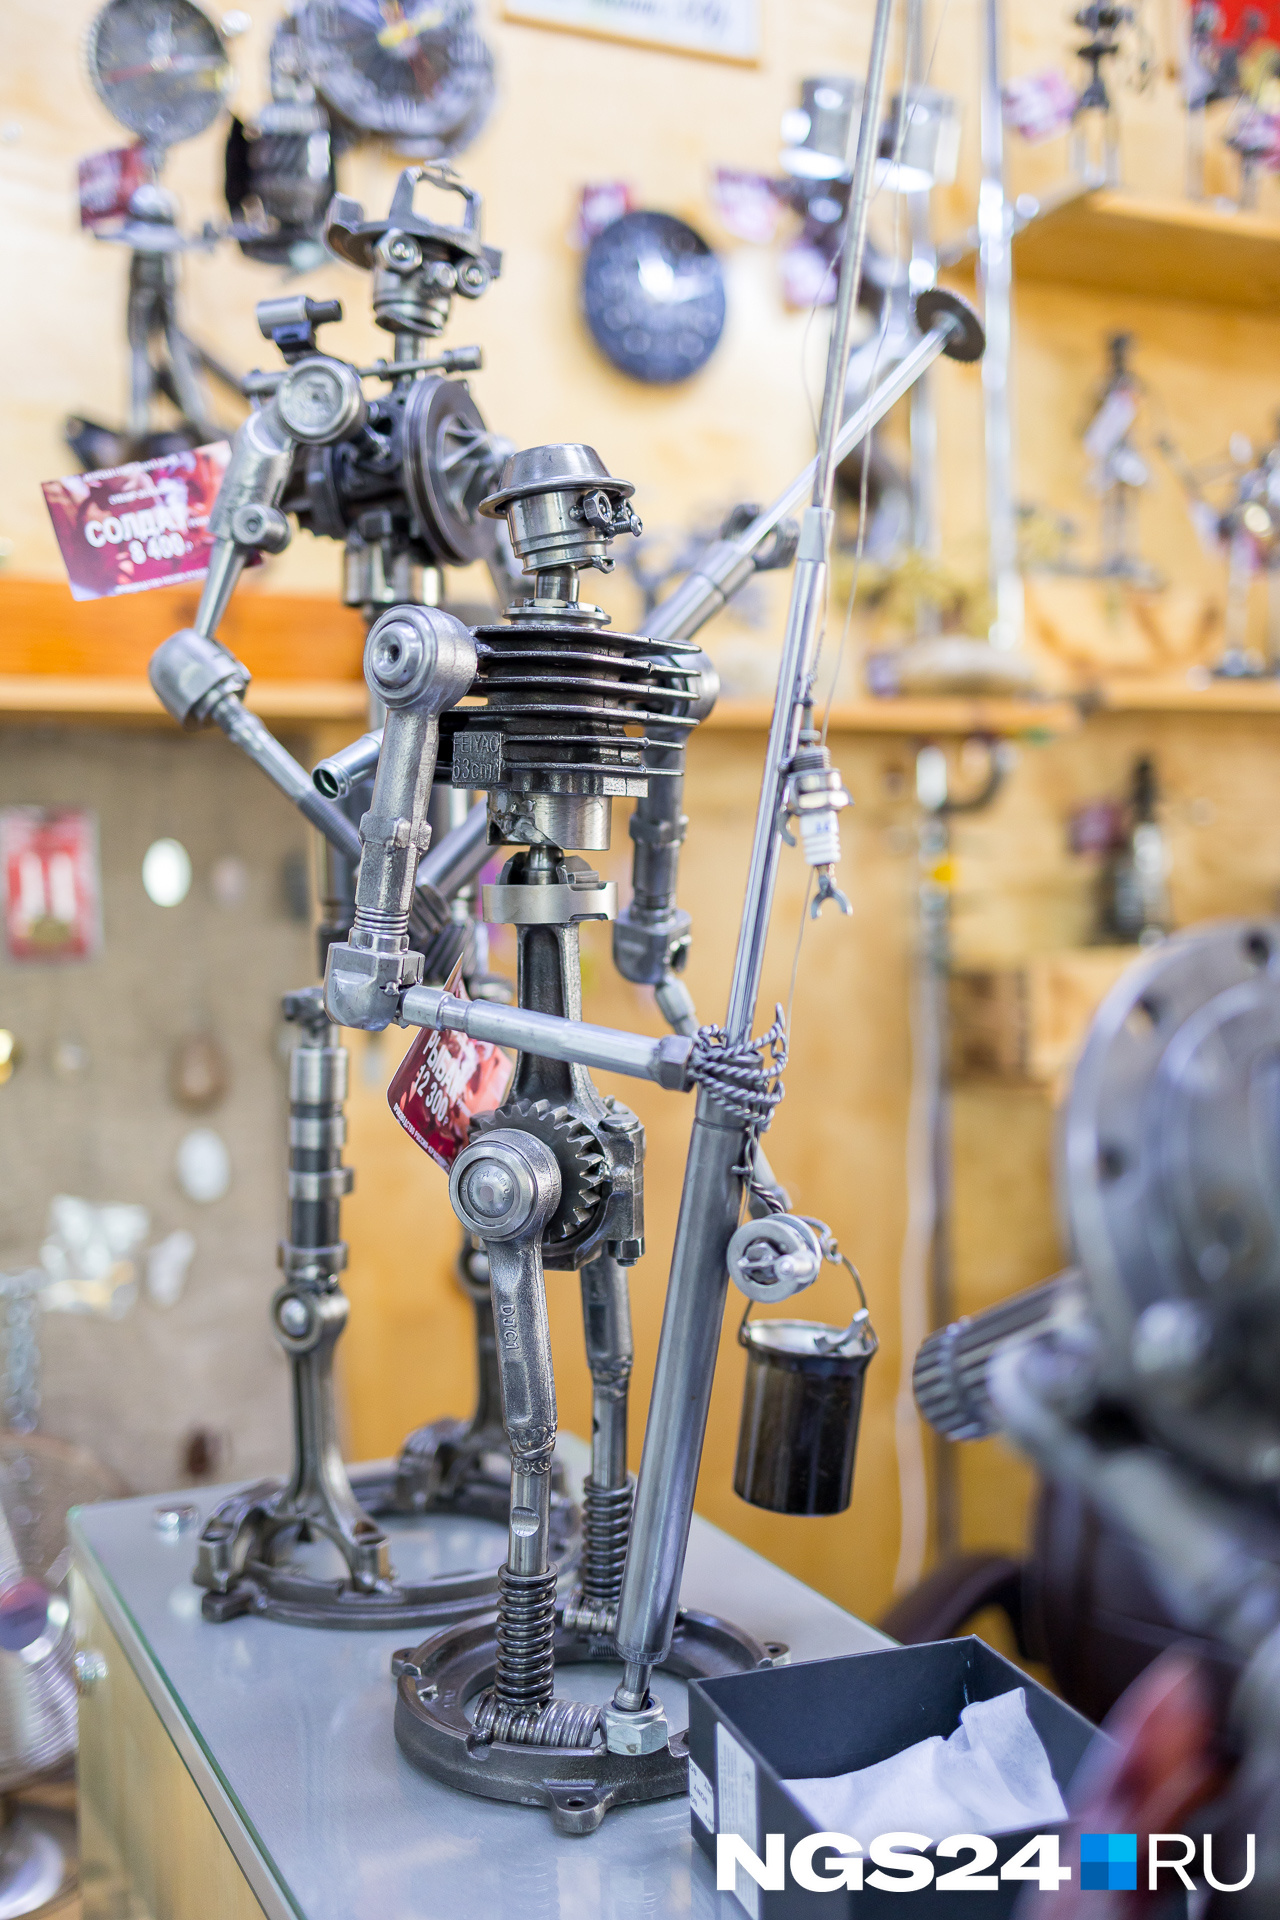 Рыбаки — одни из самых популярных роботов в коллекции мастера